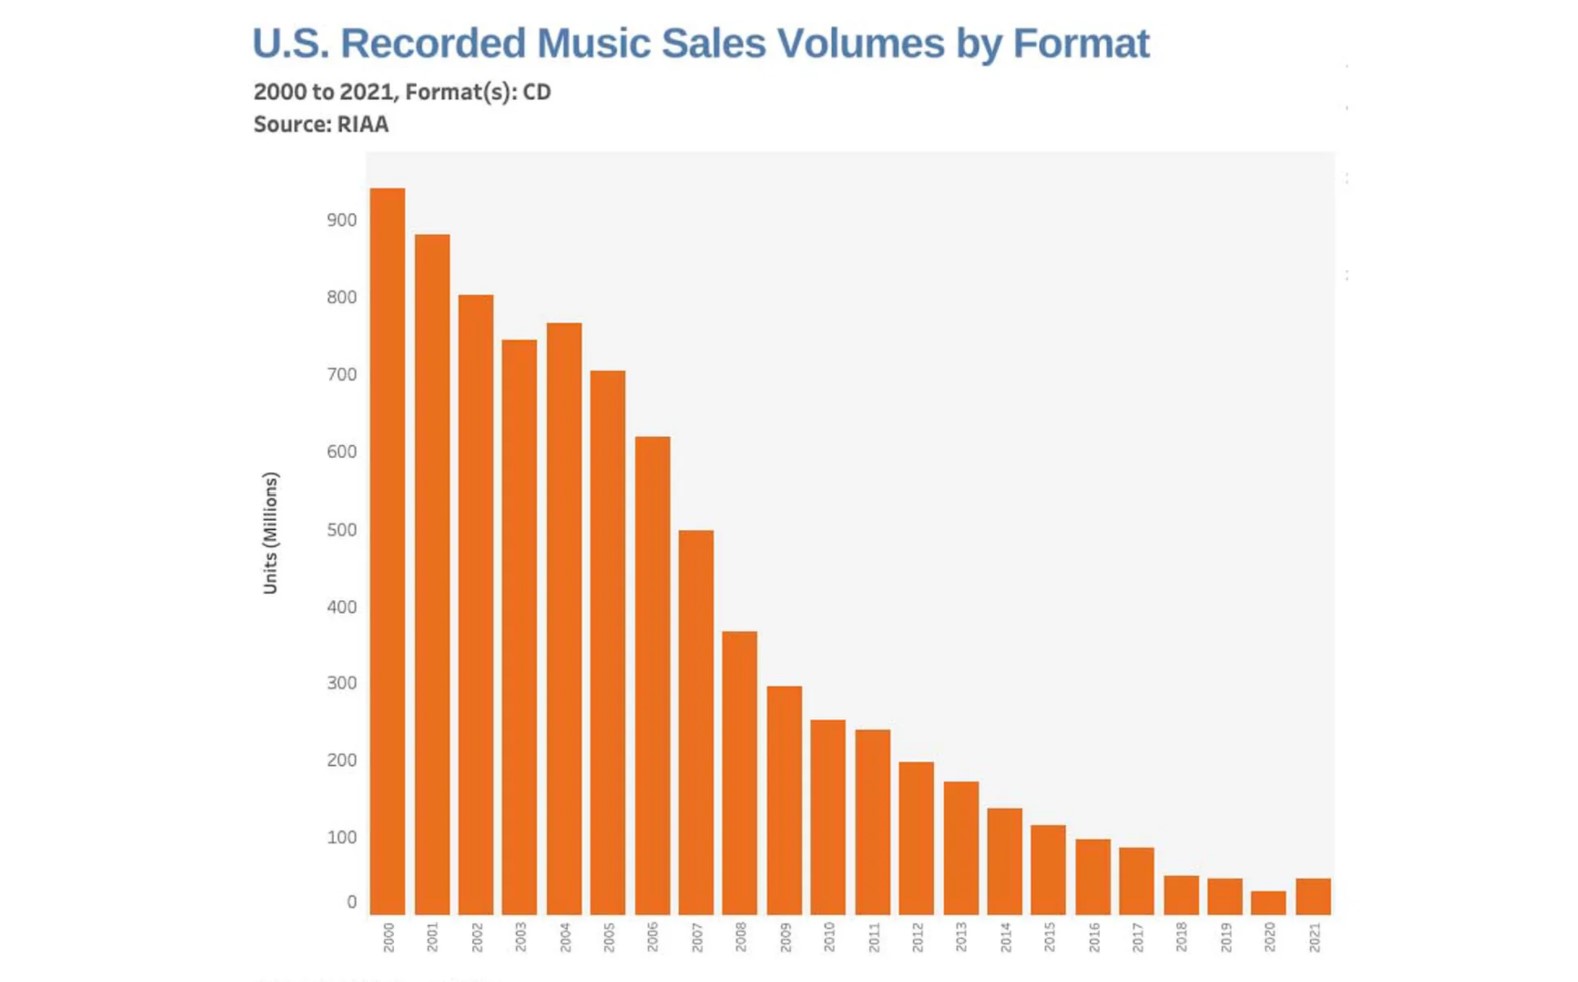 ยอดขายซีดีเพิ่มขึ้นครั้งแรกในรอบเกือบสองทศวรรษ